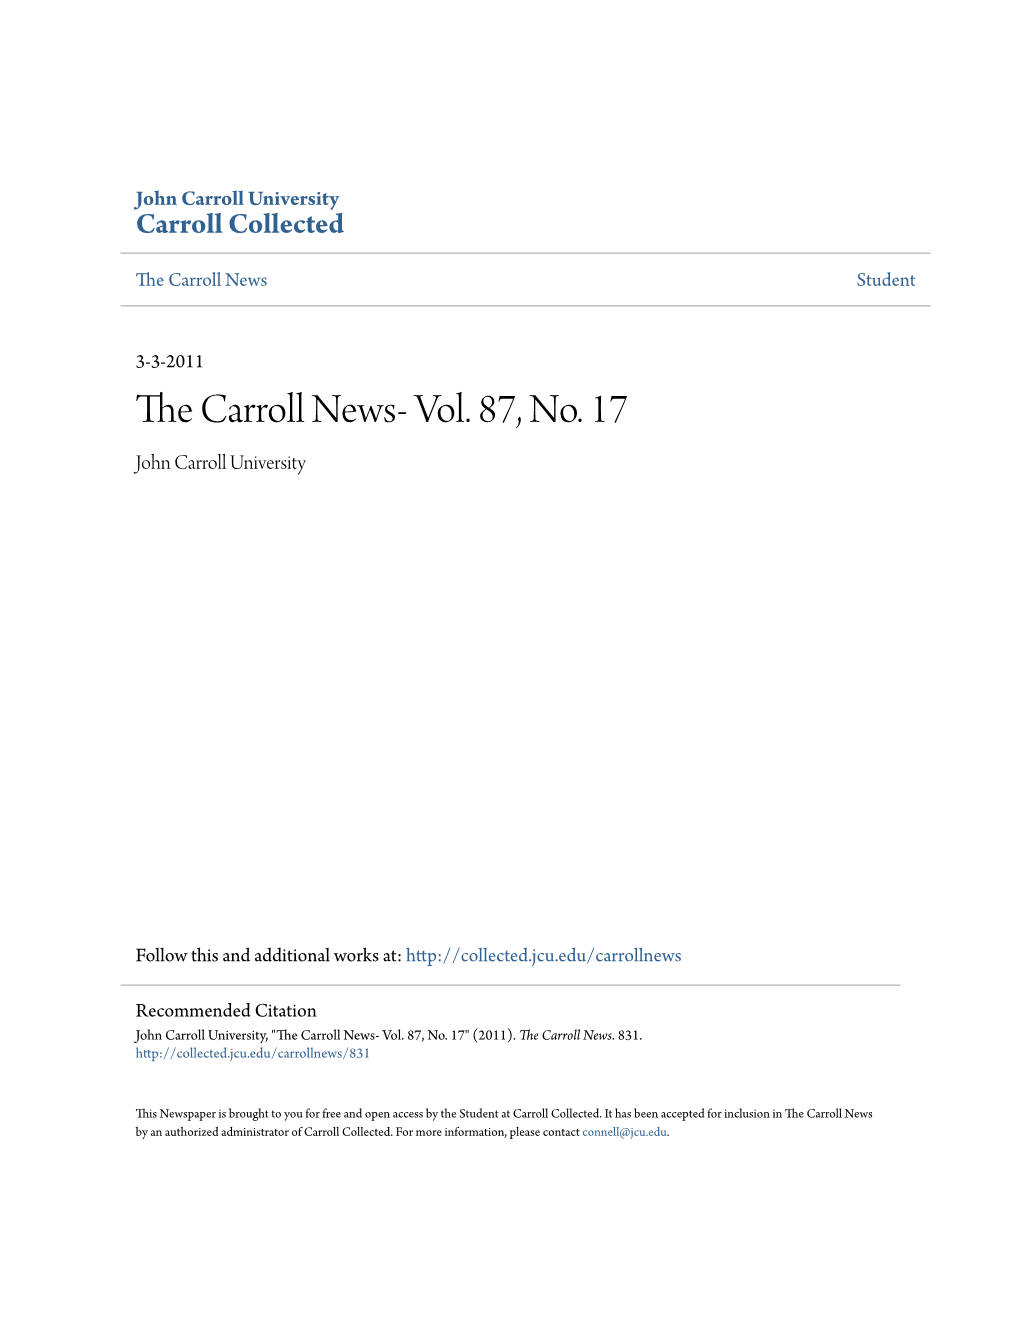 The Carroll News- Vol. 87, No. 17